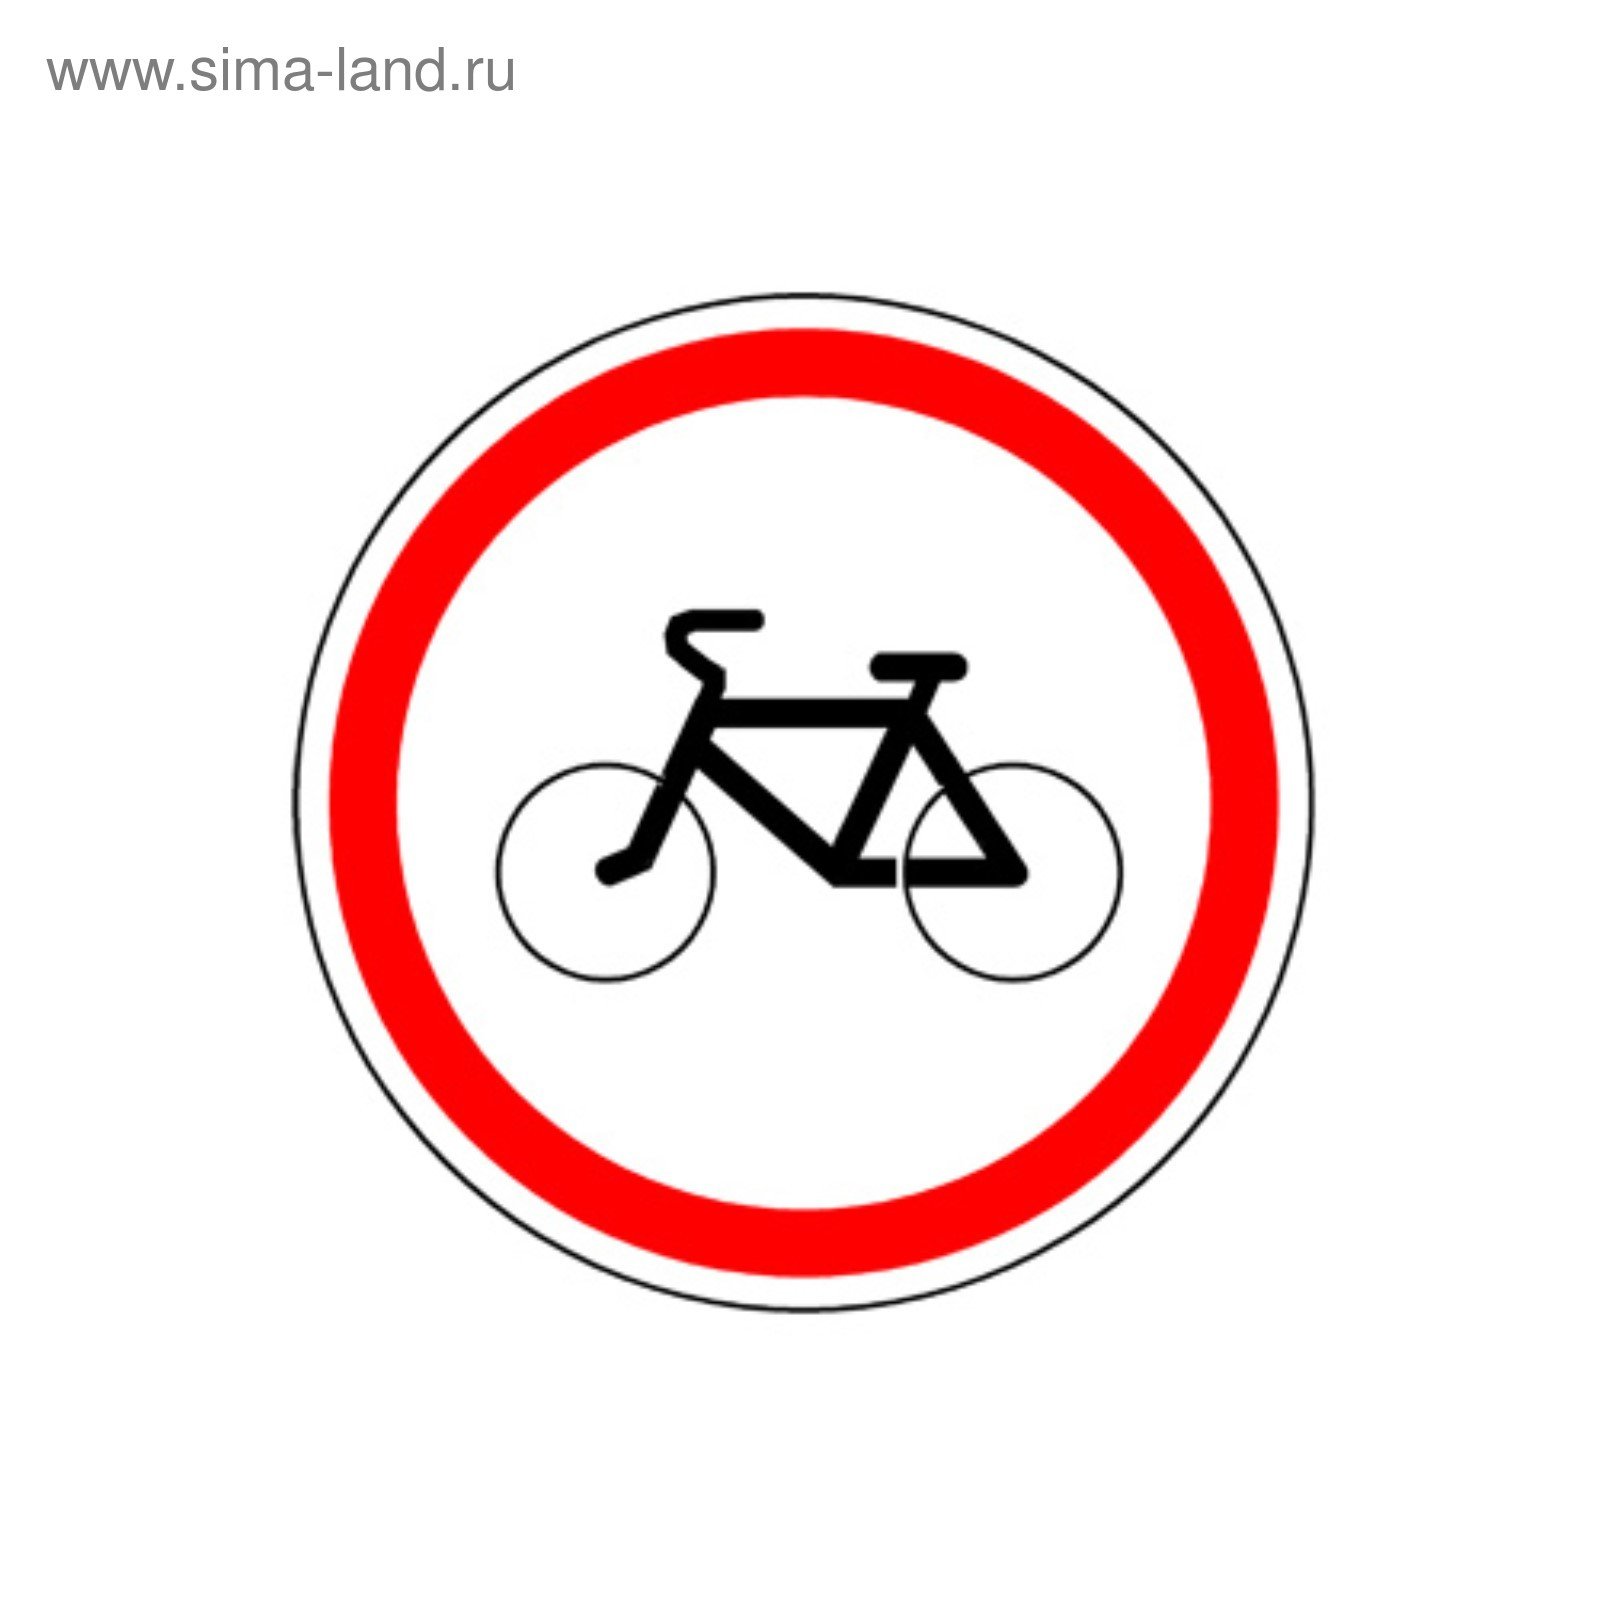 Что означает знак велосипед в красном круге